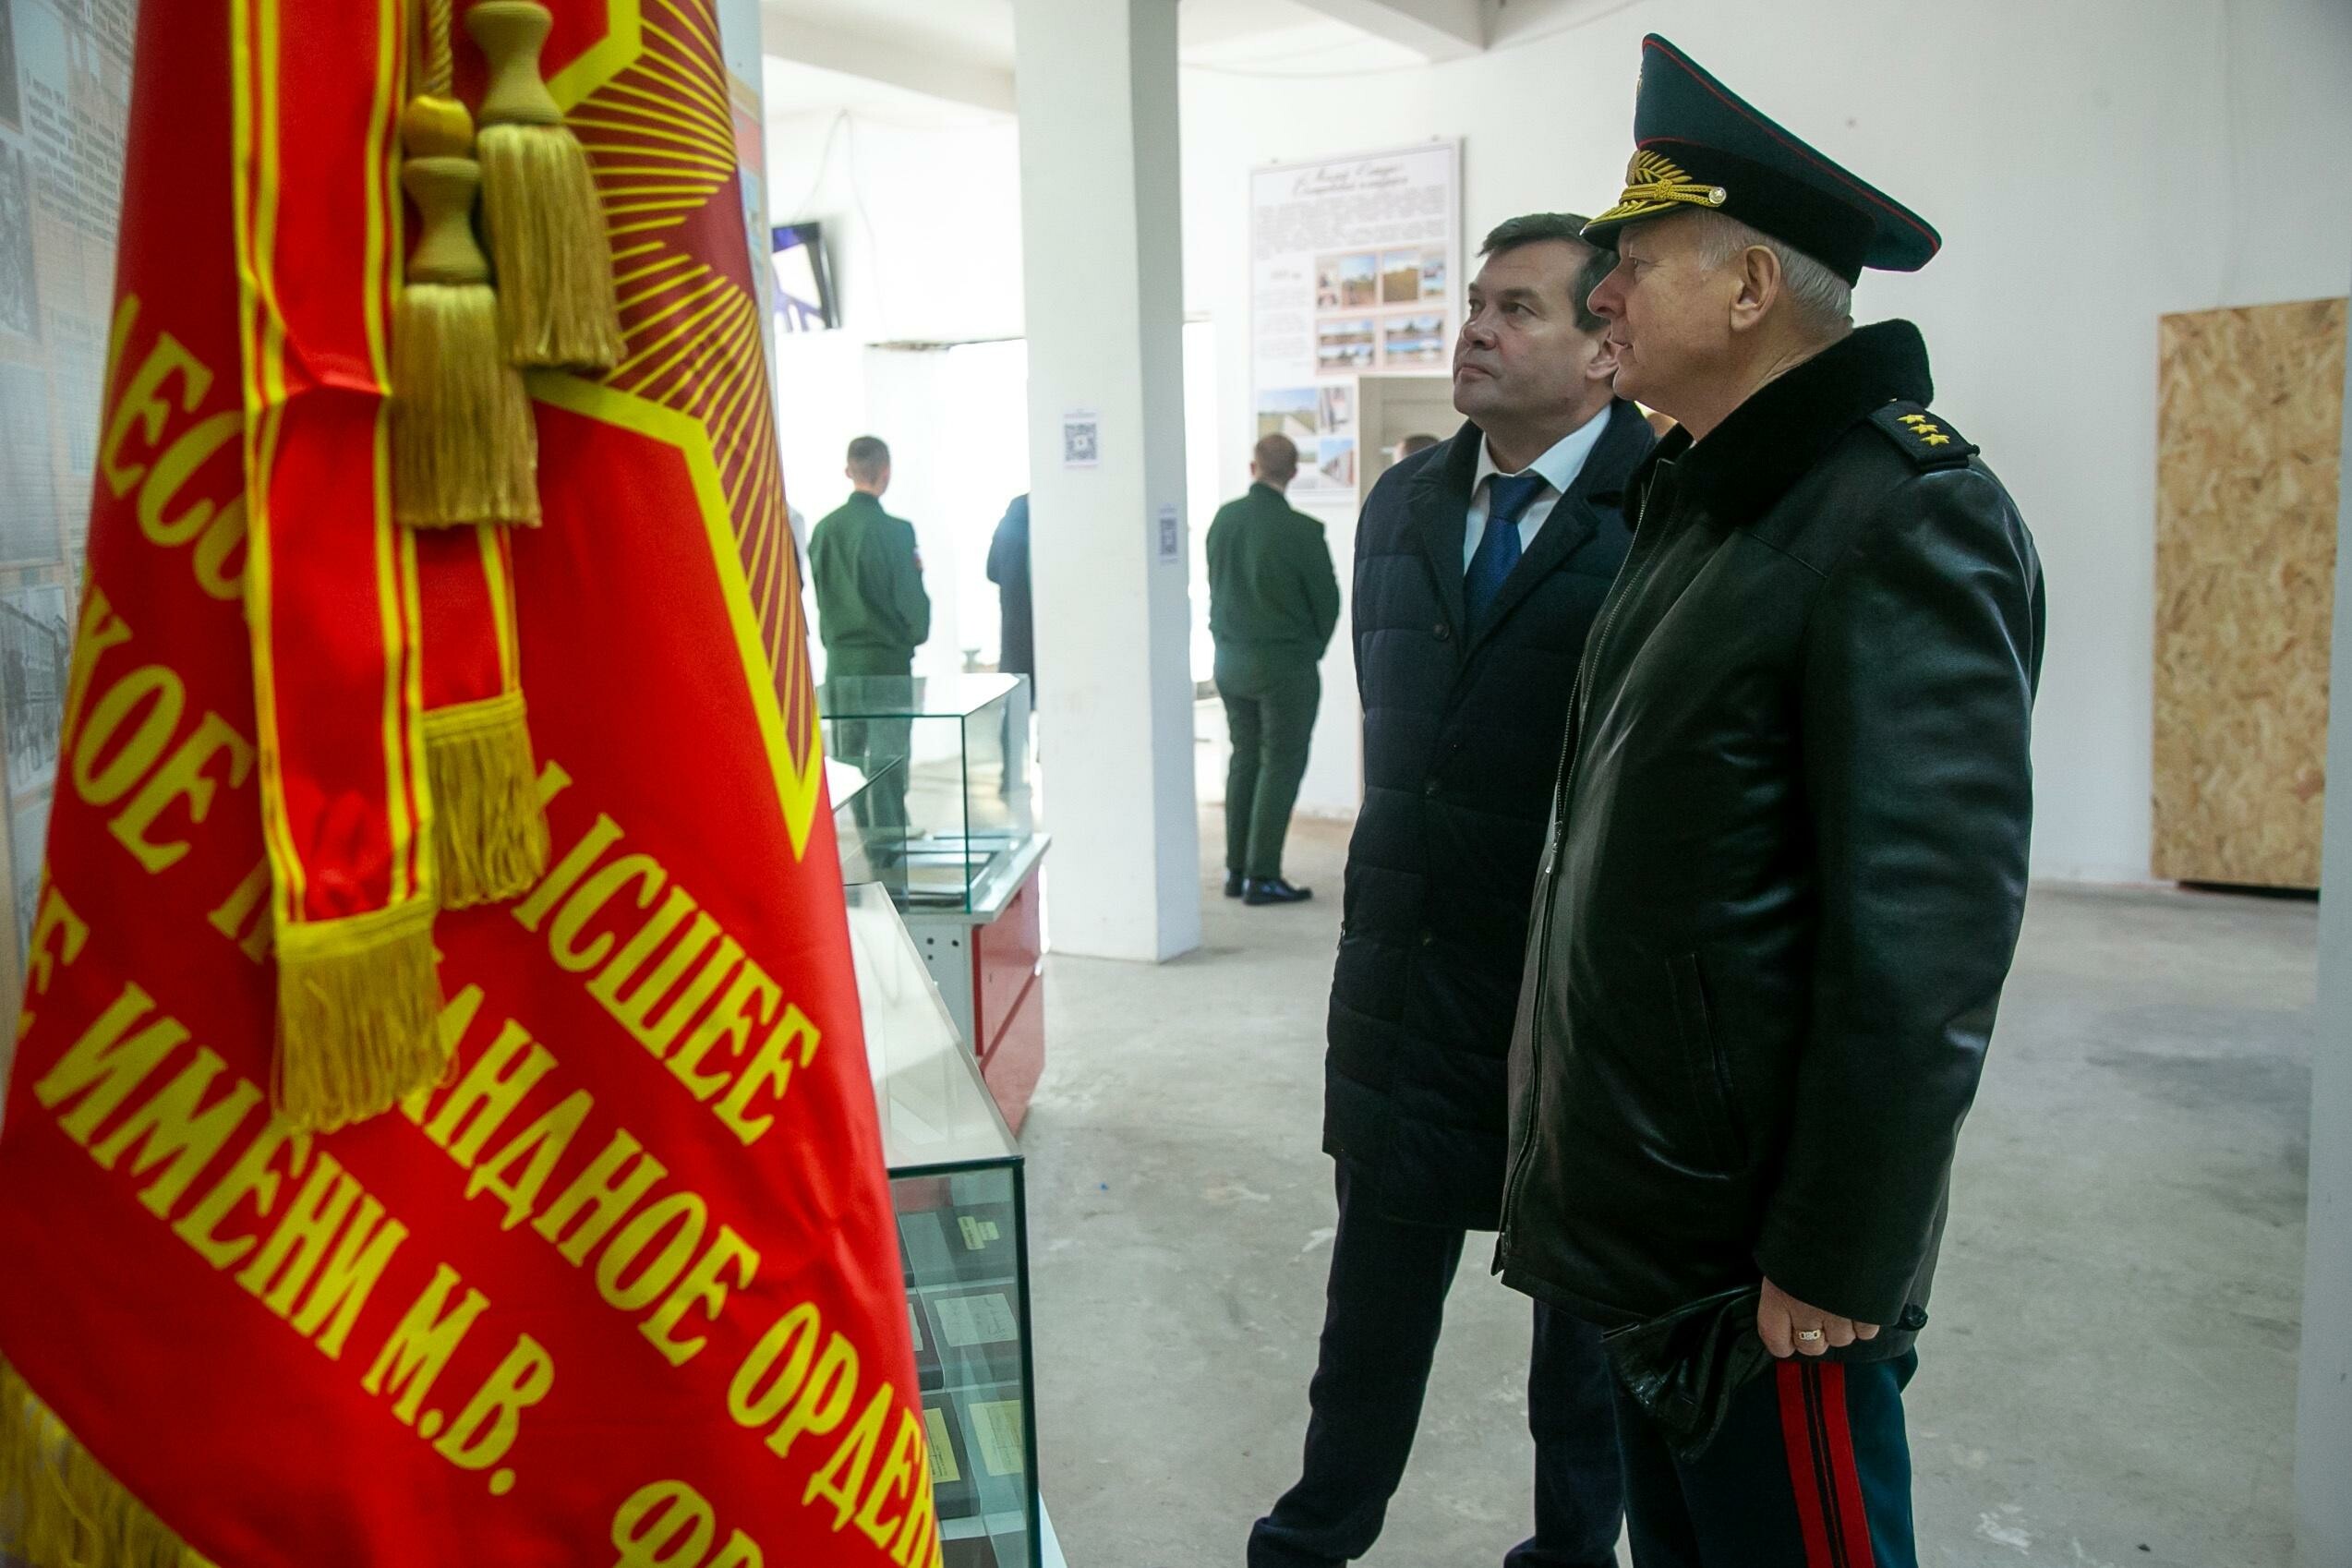 В Коломне готовится к открытию музей истории артиллерии и артиллерийского образования России